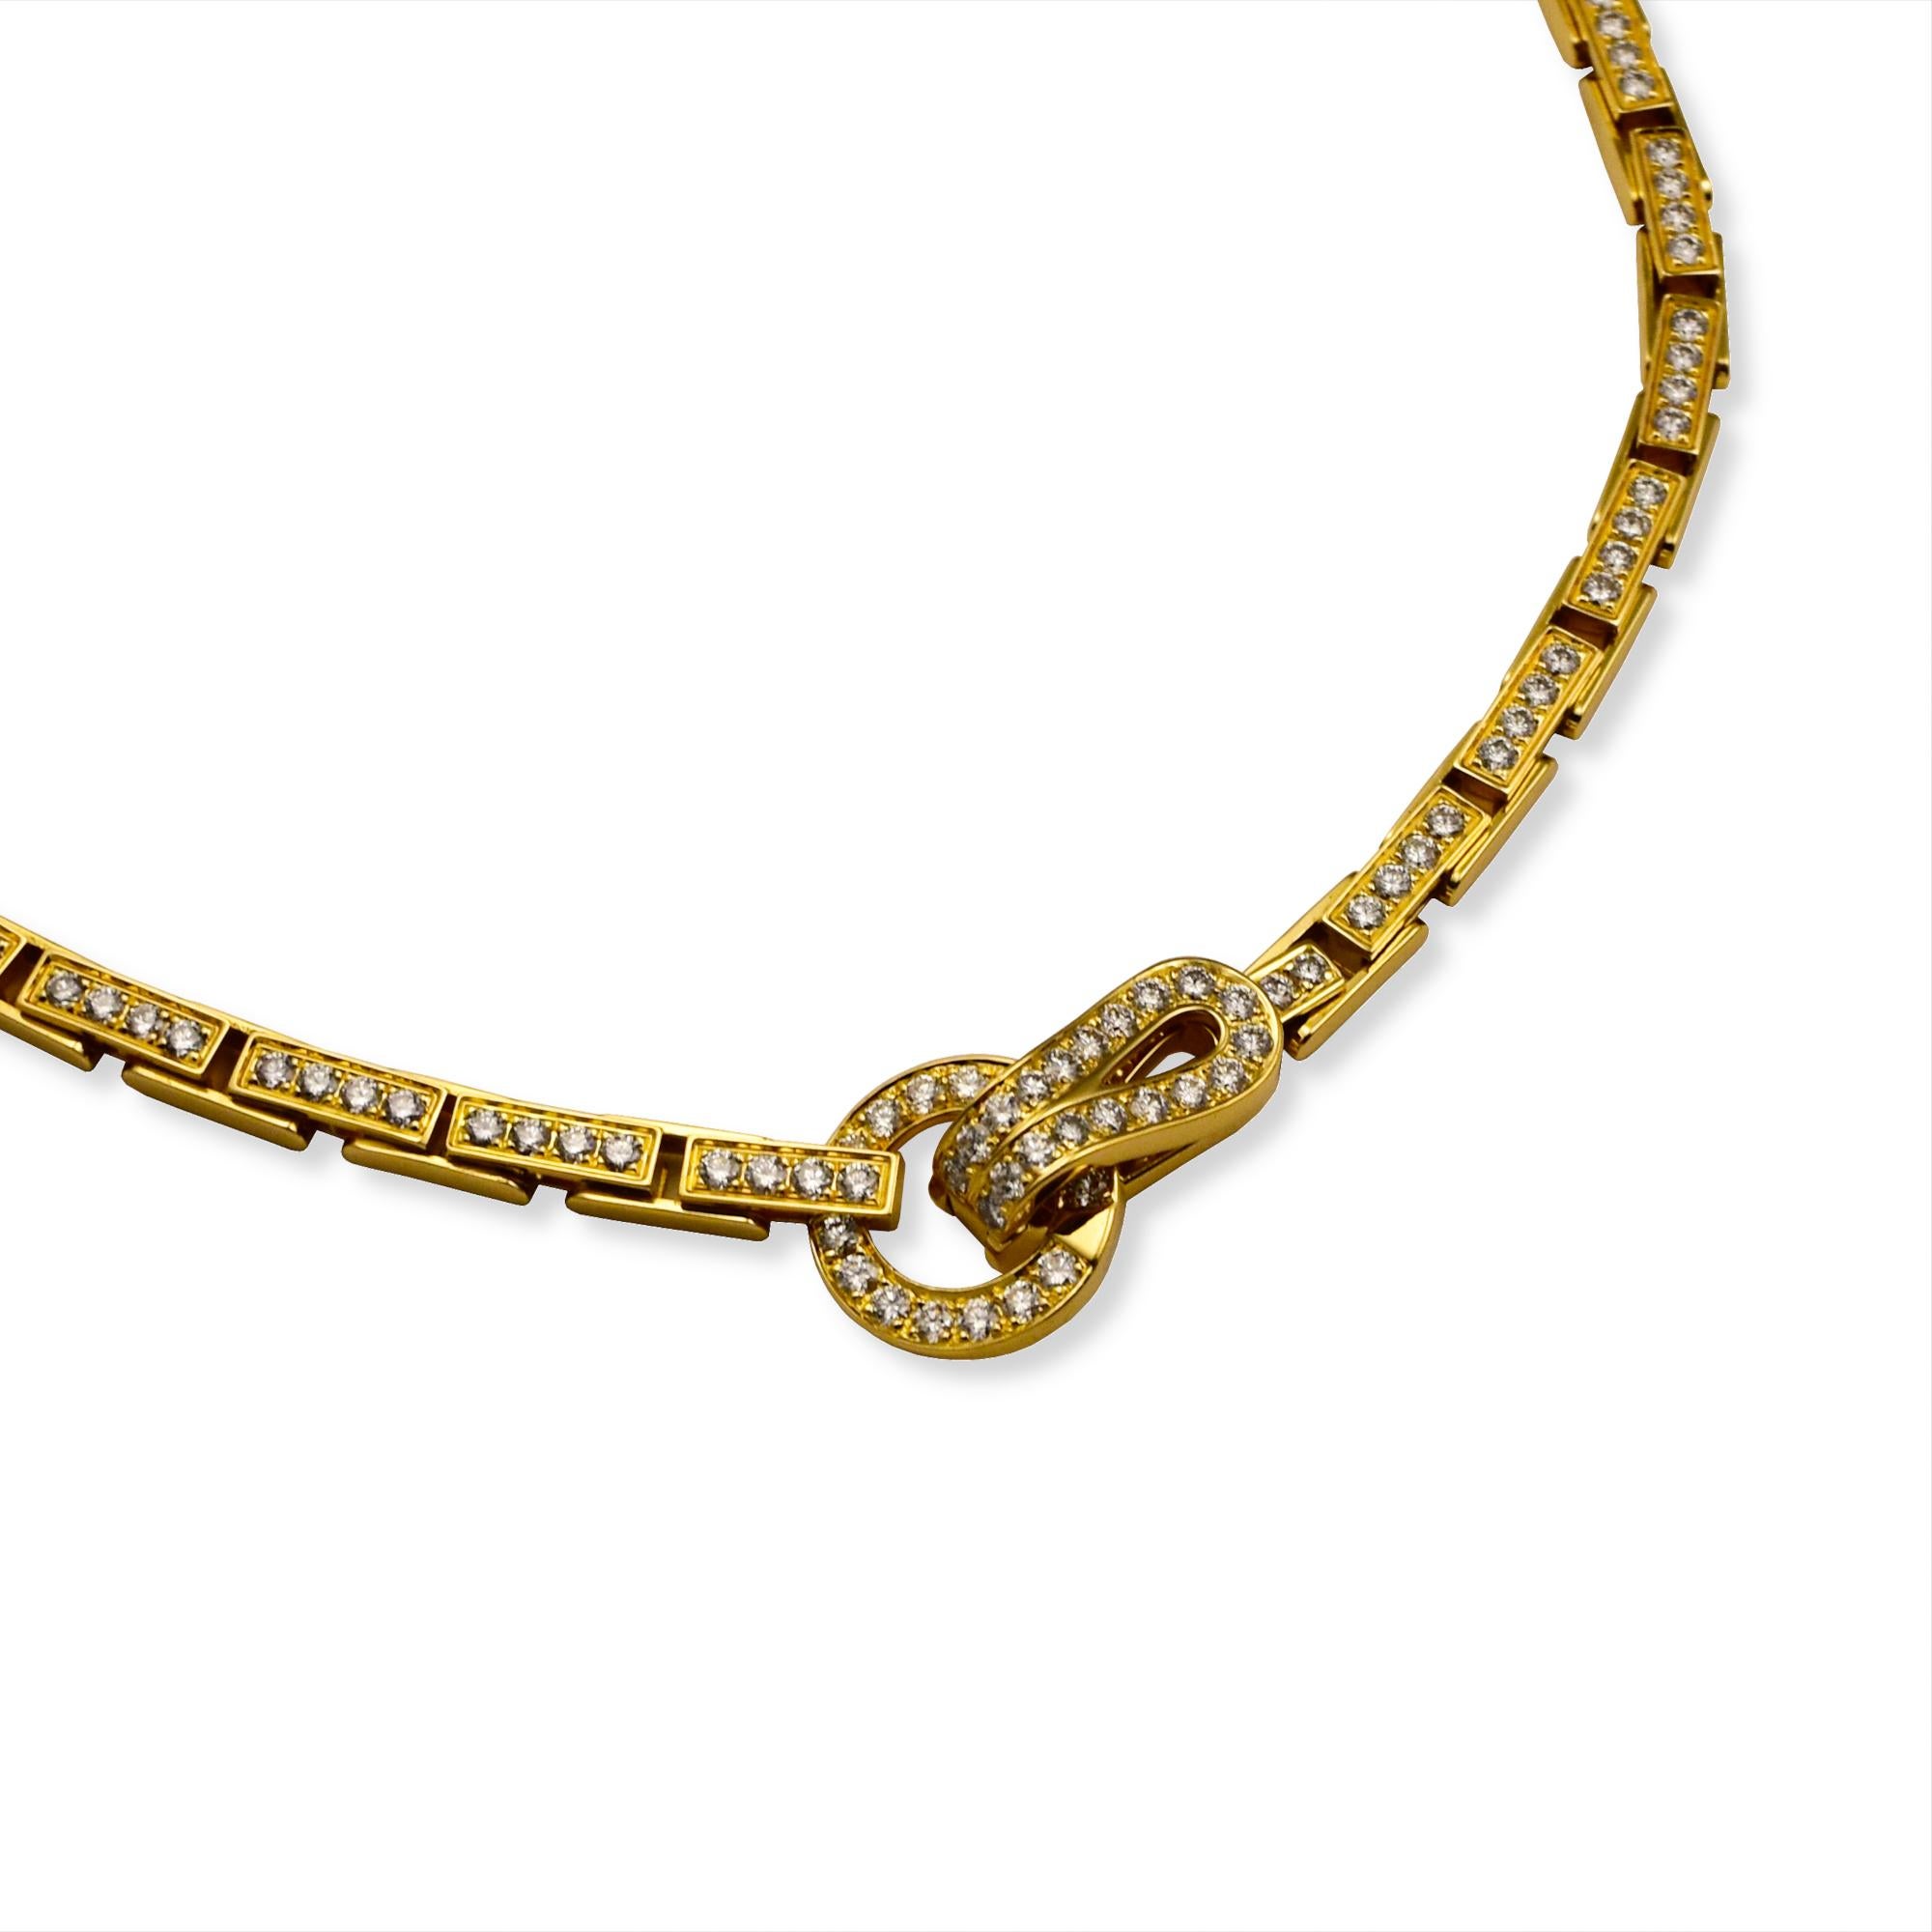 Marke: Cartier

Collection'S:  Agrafe

Stil:  Anhänger Halskette 

Metall: Gelbgold

Metall Reinheit :18K

Steine: Runder Brillantschliff

Länge der Halskette:  15,5 Zoll 

Größe des Anhängers:  1 Zoll 

Gesamtgewicht des Artikels (Gramm): 55.8